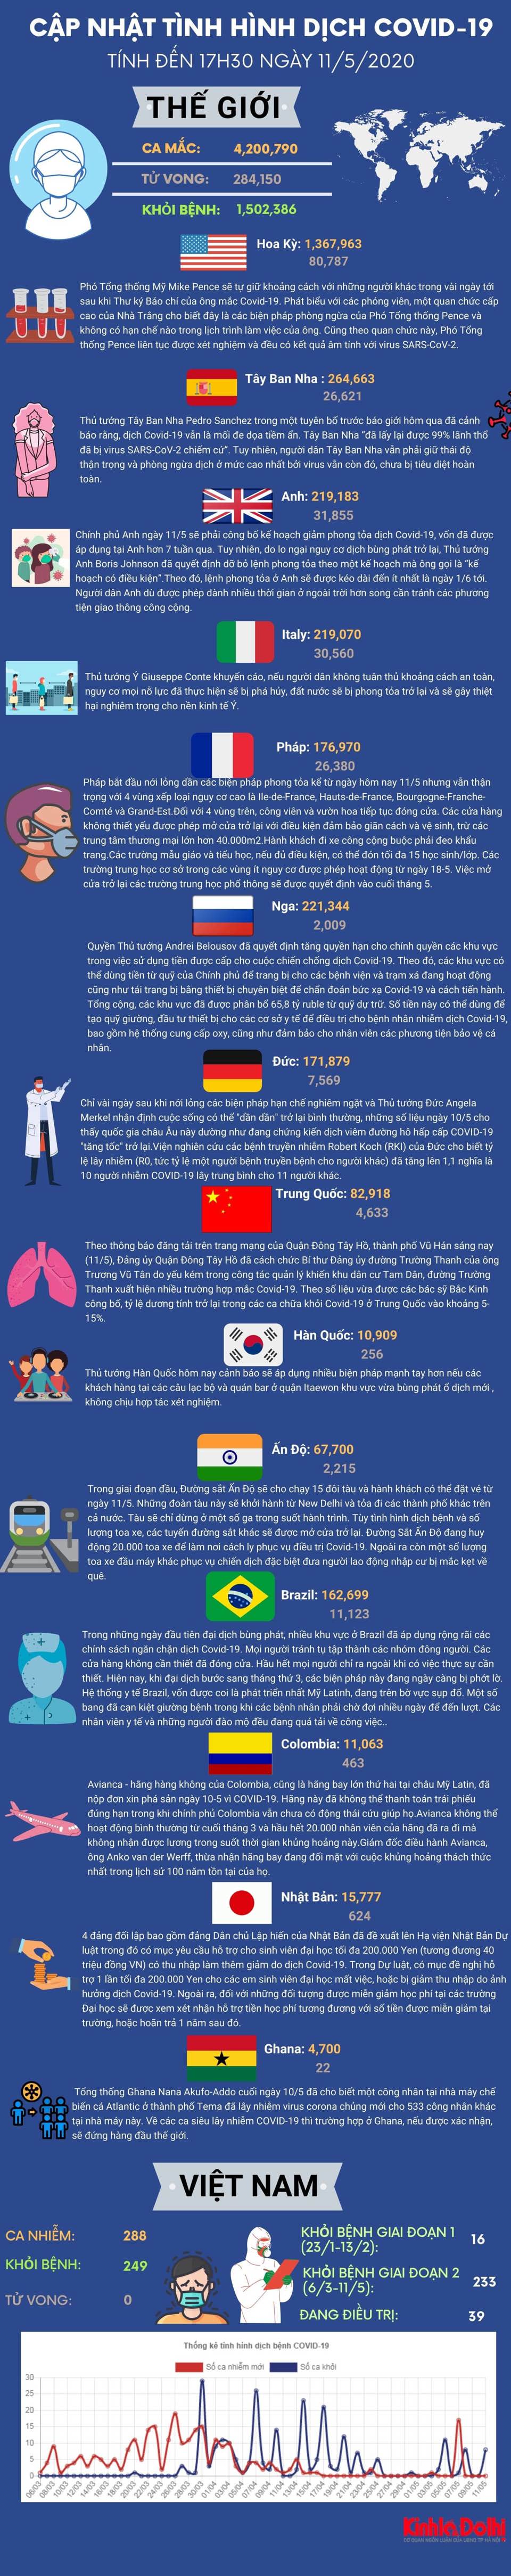 [Infographic] Cập nhật dịch Covid-19 tối 11/5: Hơn 4.2 triệu người trên toàn cầu mắc bệnh - Ảnh 1